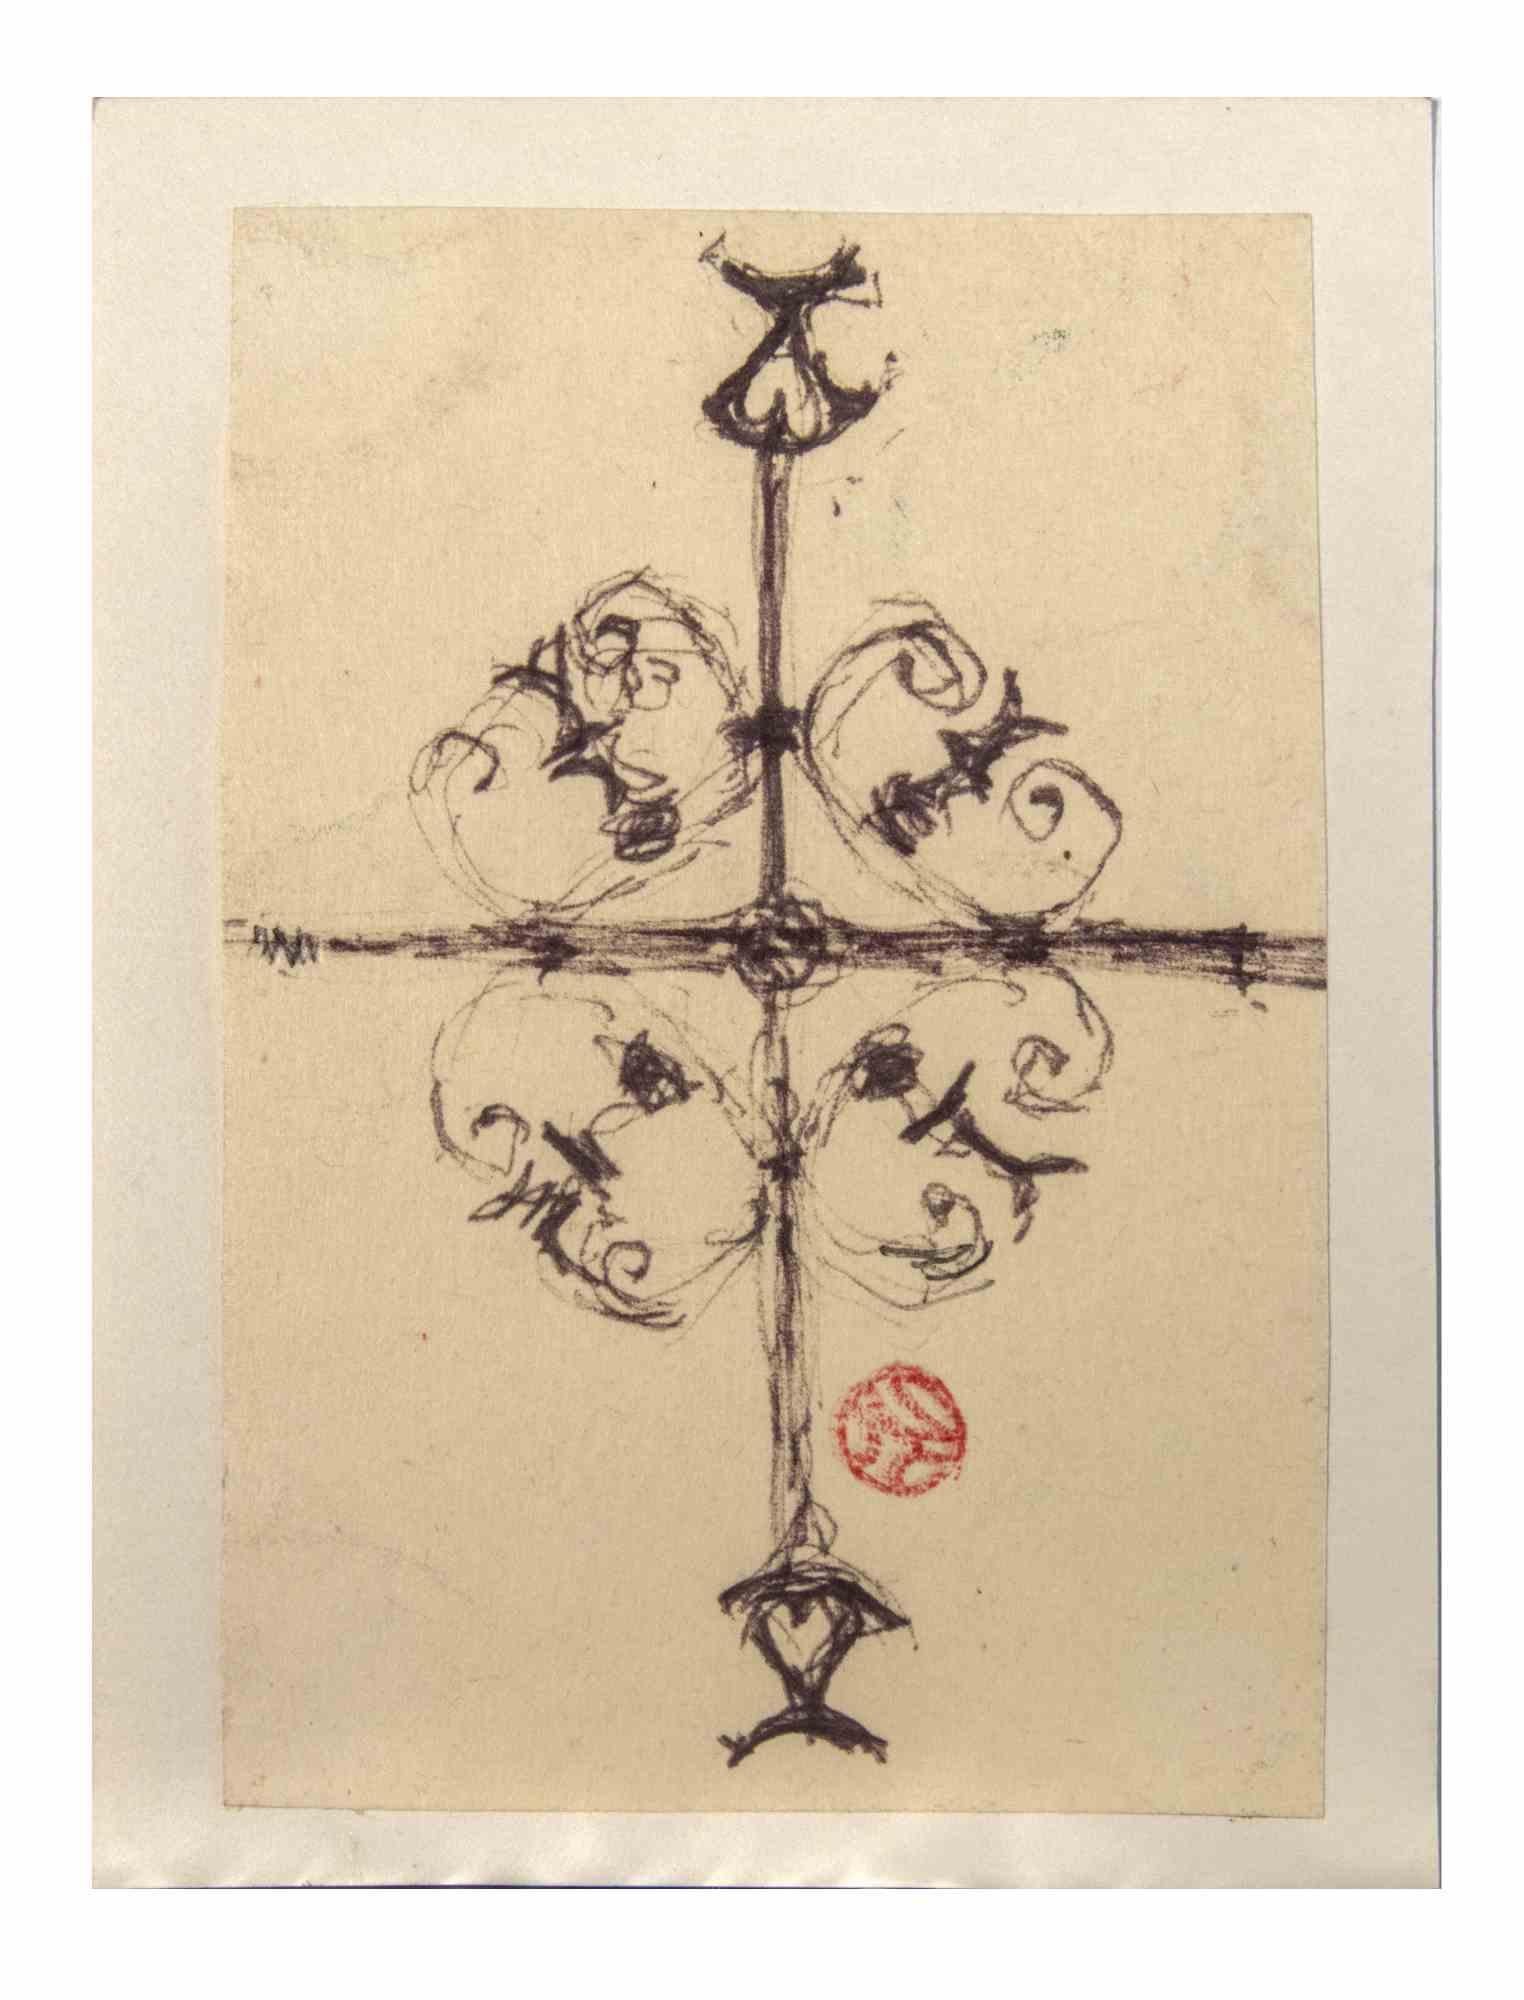 Das dekorative Kreuz ist eine Pastellzeichnung auf Papier aus dem frühen 20. Jahrhundert von Suzanne Tourte.

Handsigniert auf der Unterseite.

Guter Zustand mit leichten Stockflecken.

Das Kunstwerk ist mit geschickten Strichen wunderschön